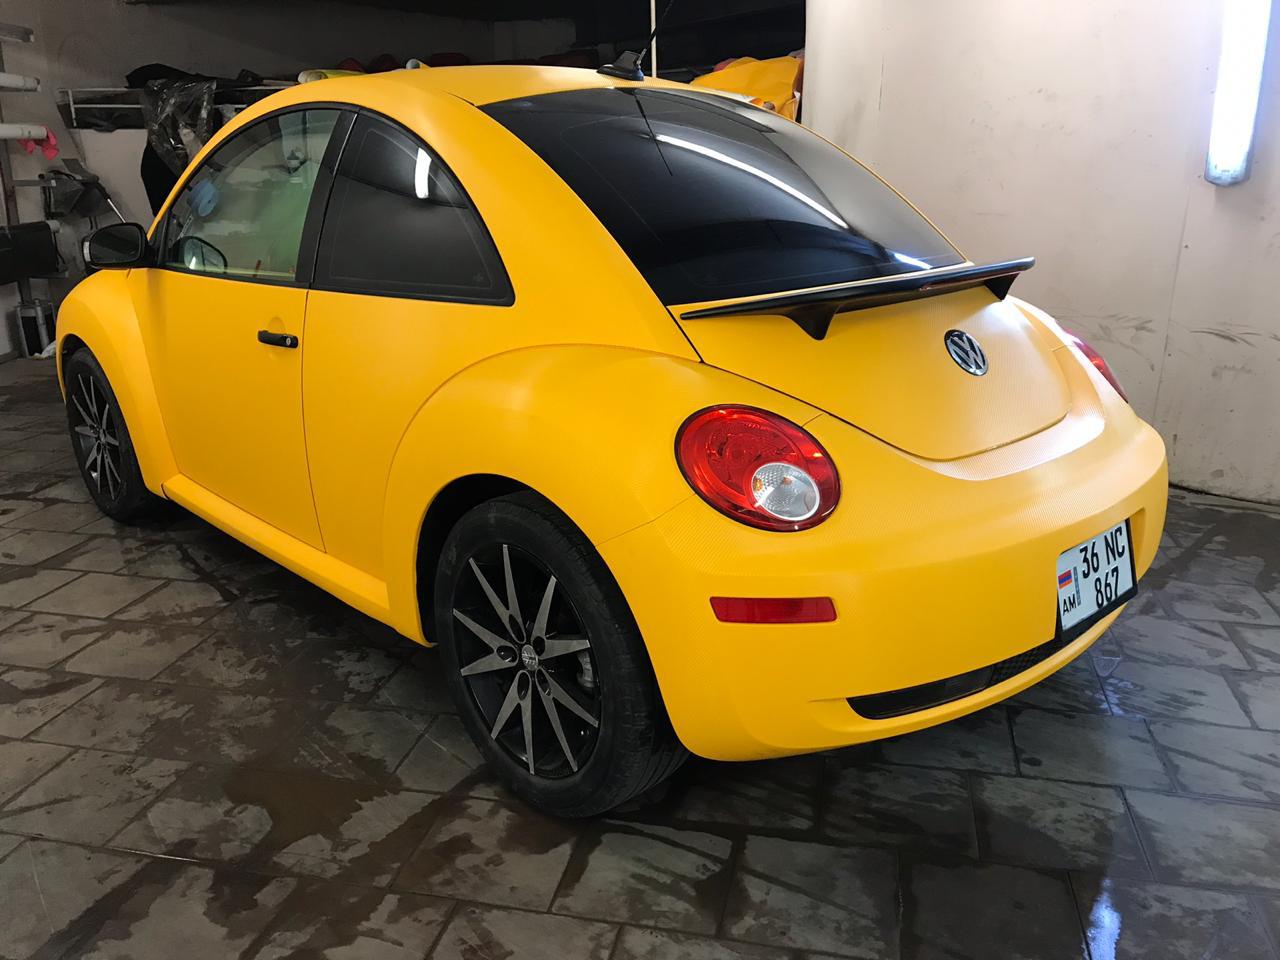 Оклейка Volkswagen Жук в желтый карбон